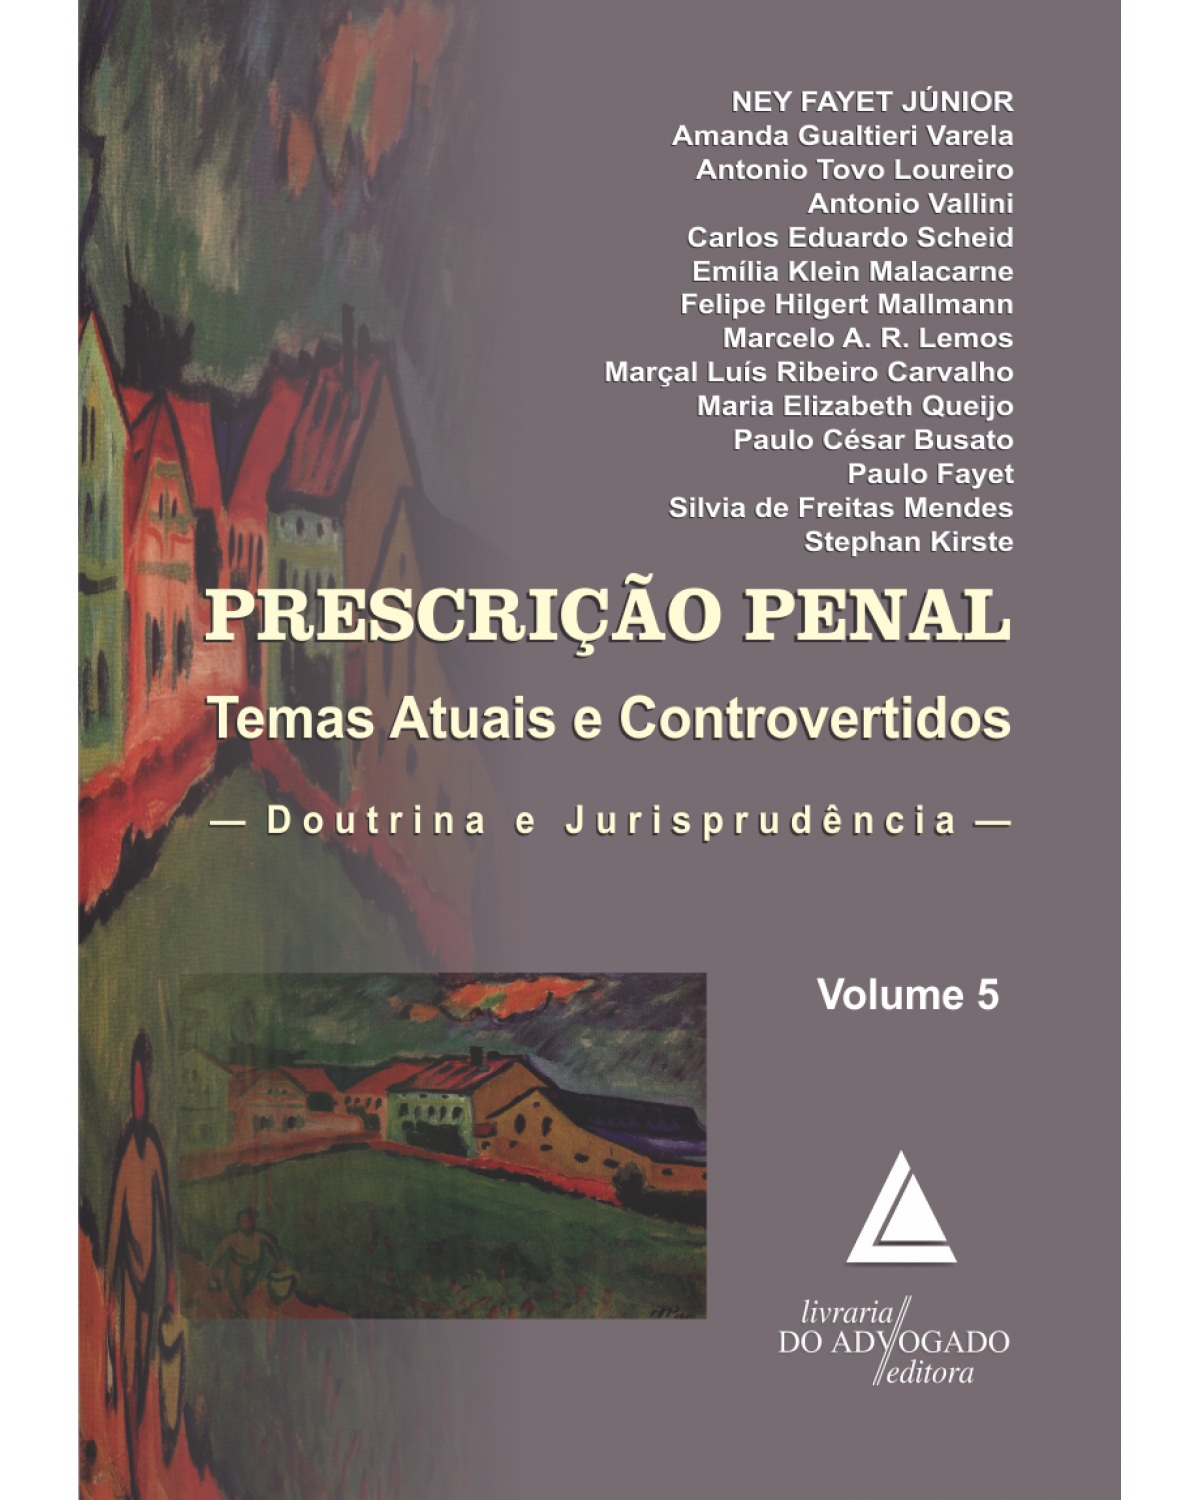 Prescrição penal - Volume 5: Temas atuais e controvertidos: doutrina e jurisprudência - 1ª Edição | 2015